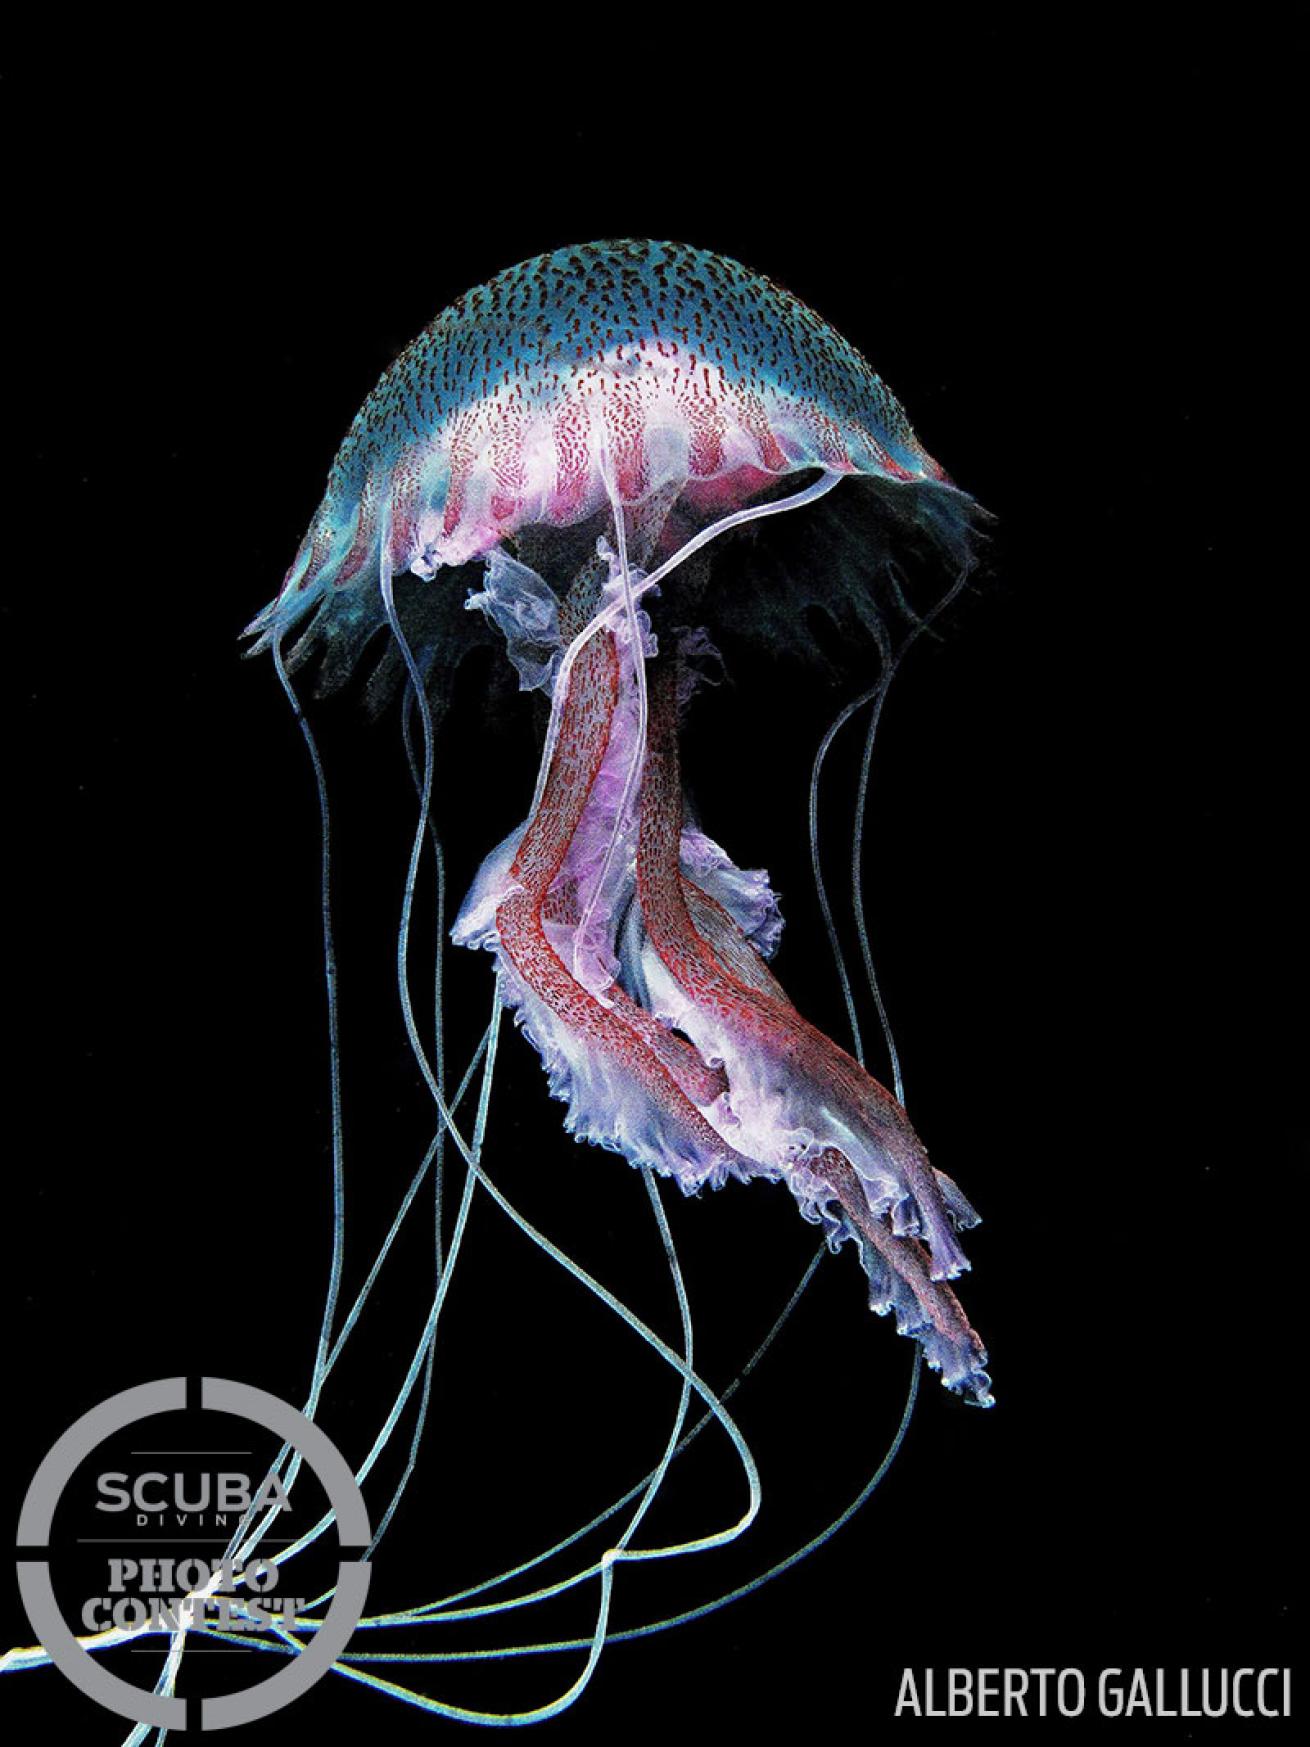 Jellyfish underwater photo Mediterranean Sea